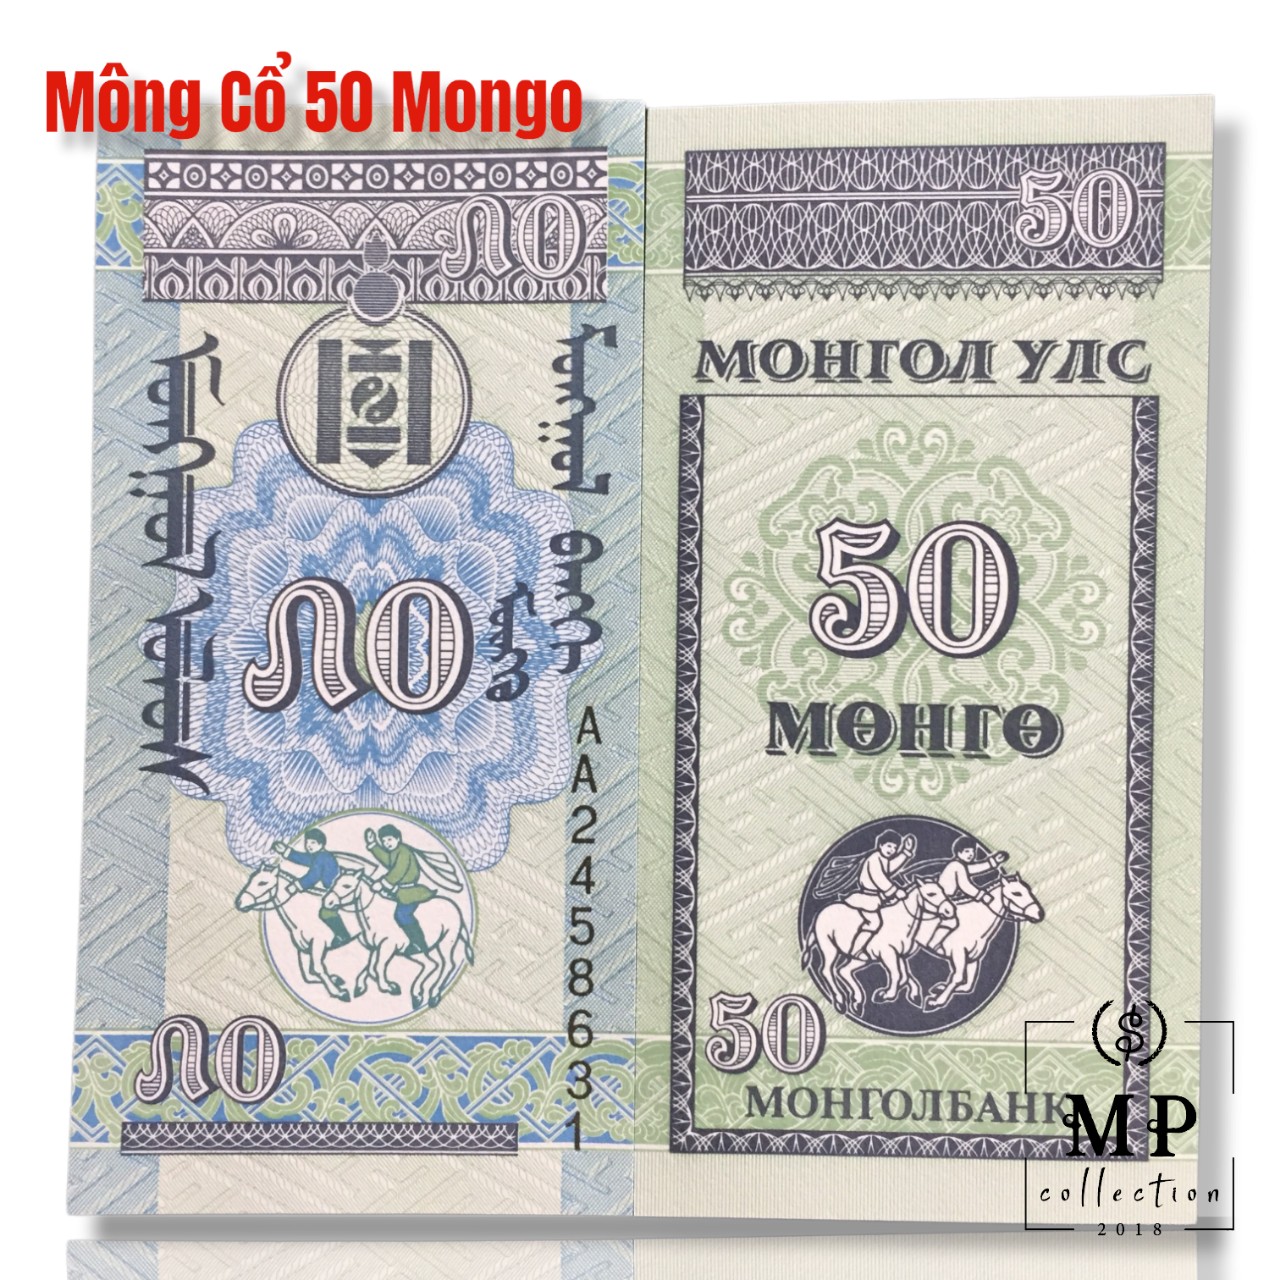 Tờ tiền đứng độc đáo Mông Cổ 50 Mongo, mệnh giá nhỏ nhất , kích thước bé nhất của Mongolia 45x90mm , Mới 100% UNC, sưu tầm